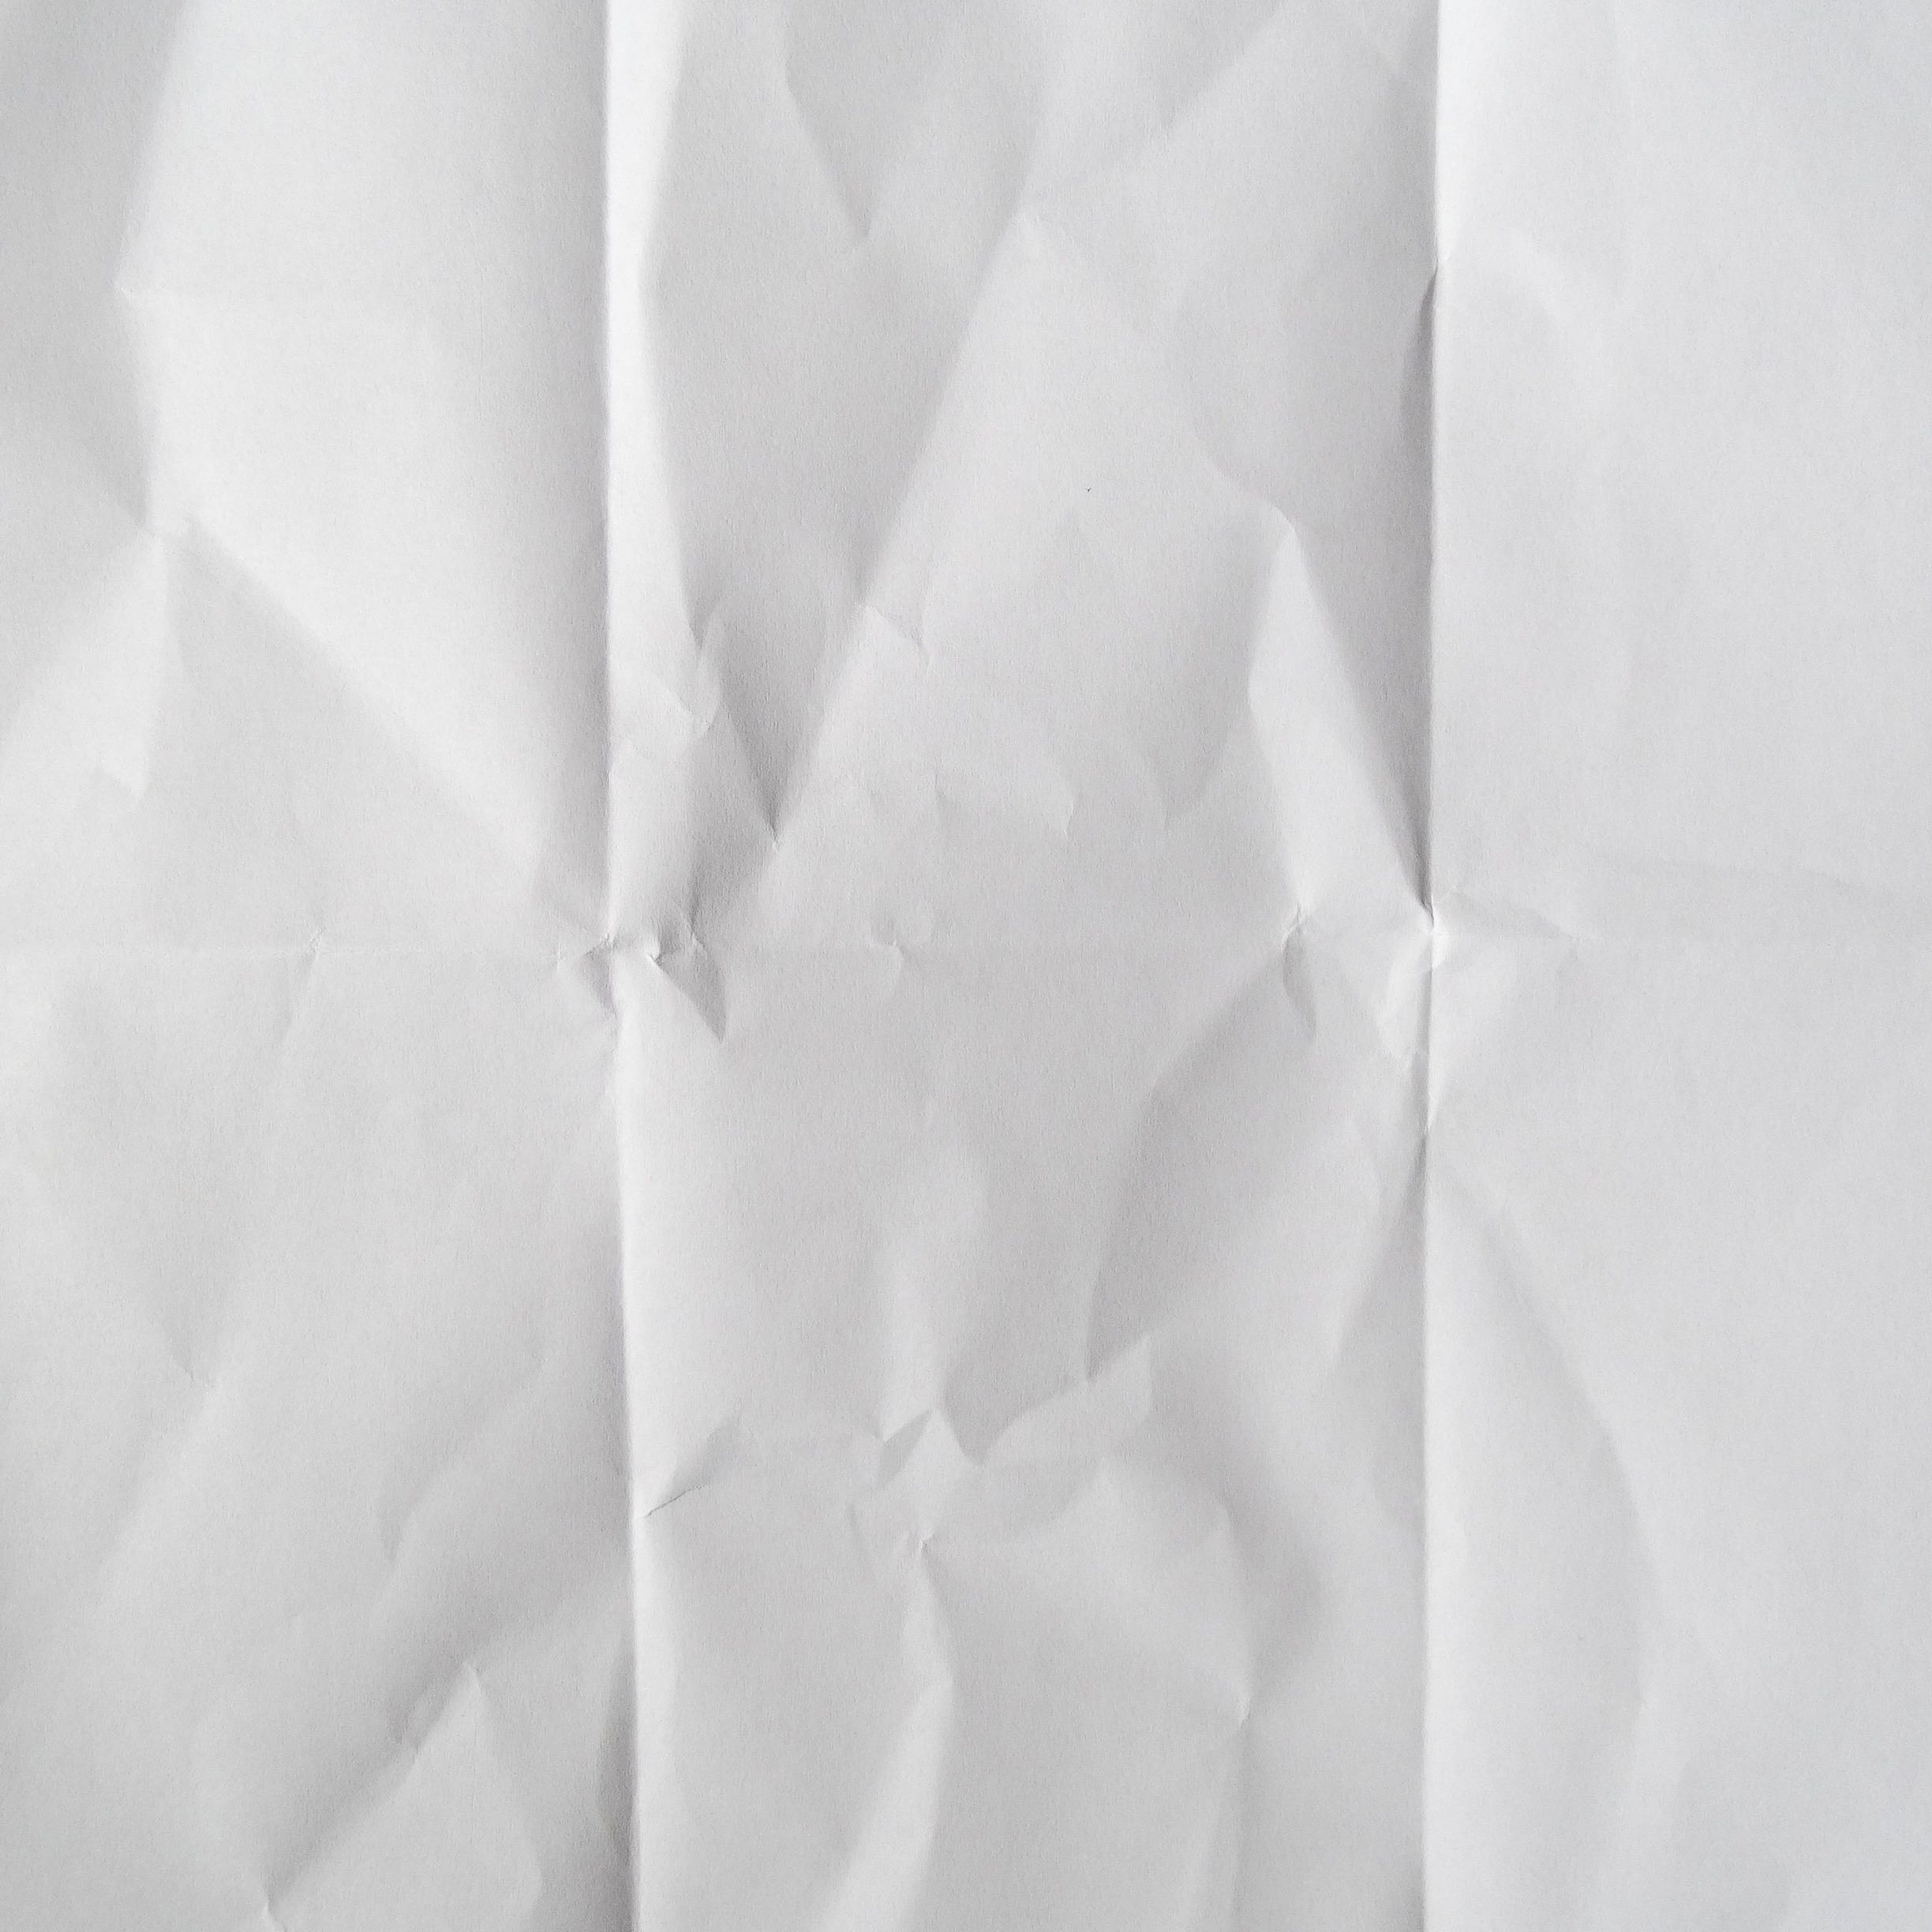 Текстура офисной бумаги